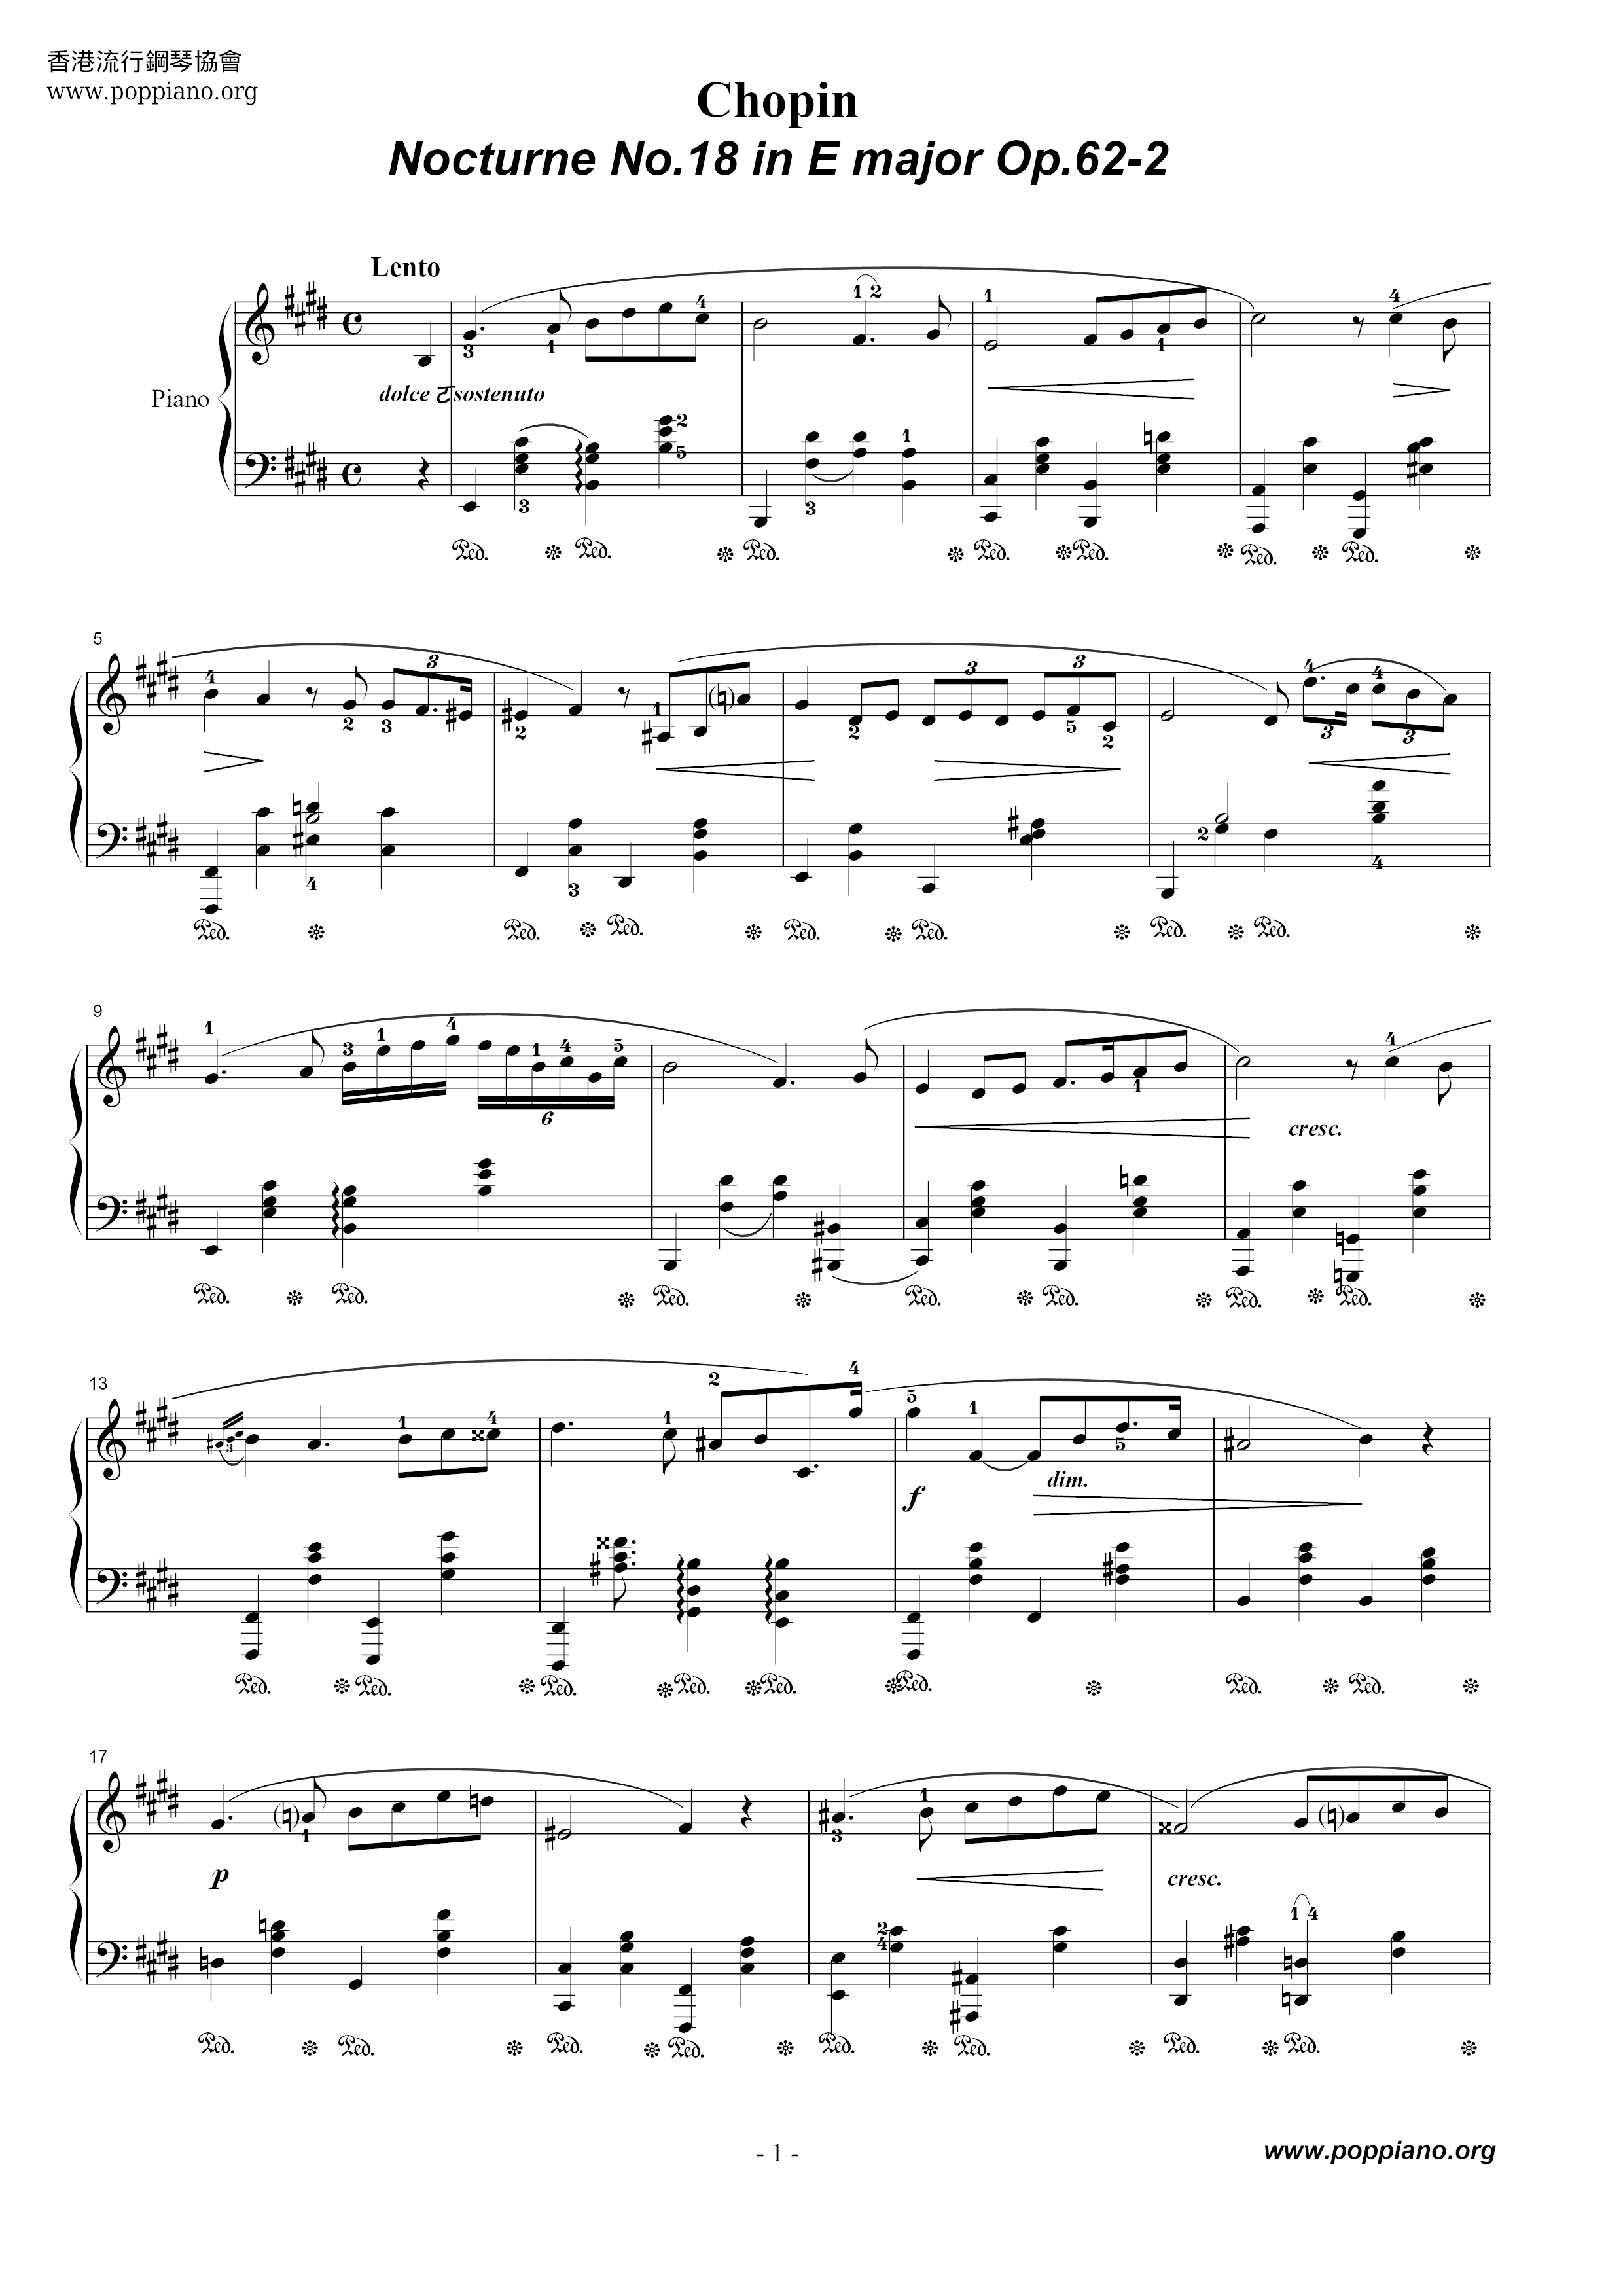 Nocturne No. 18 Op. 62 No. 2 Score